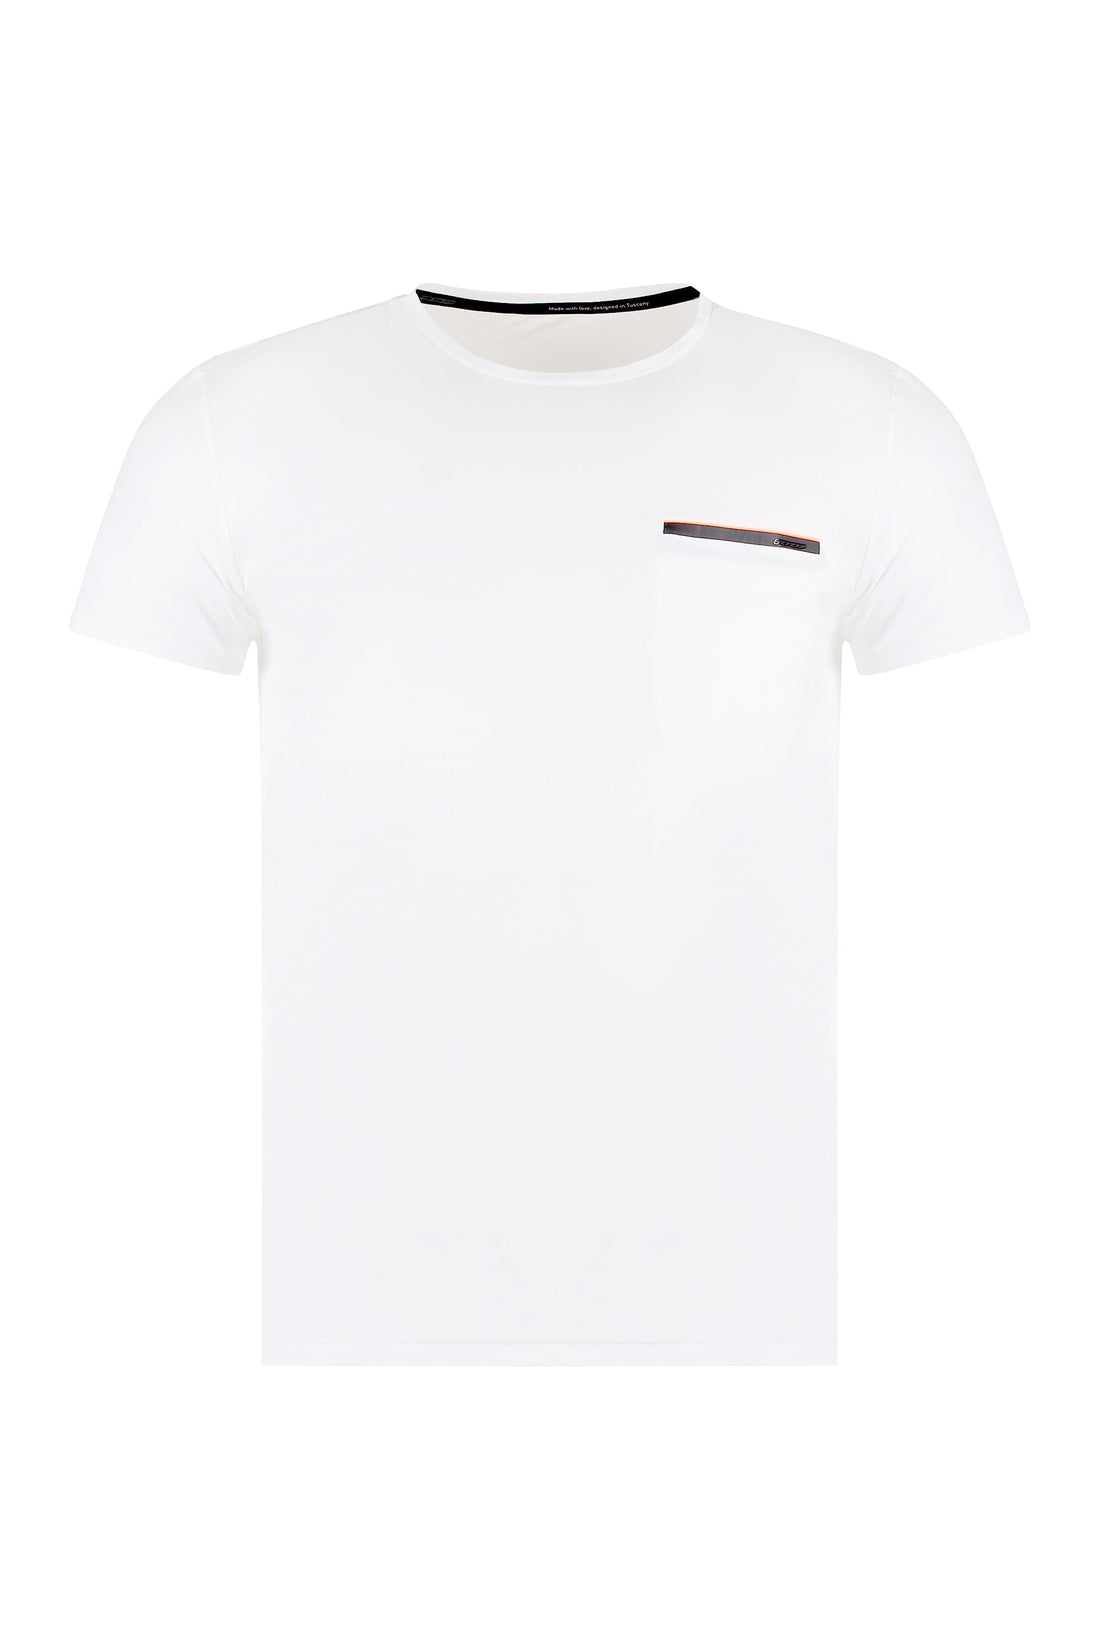 RRD-OUTLET-SALE-Techno fabric t-shirt-ARCHIVIST